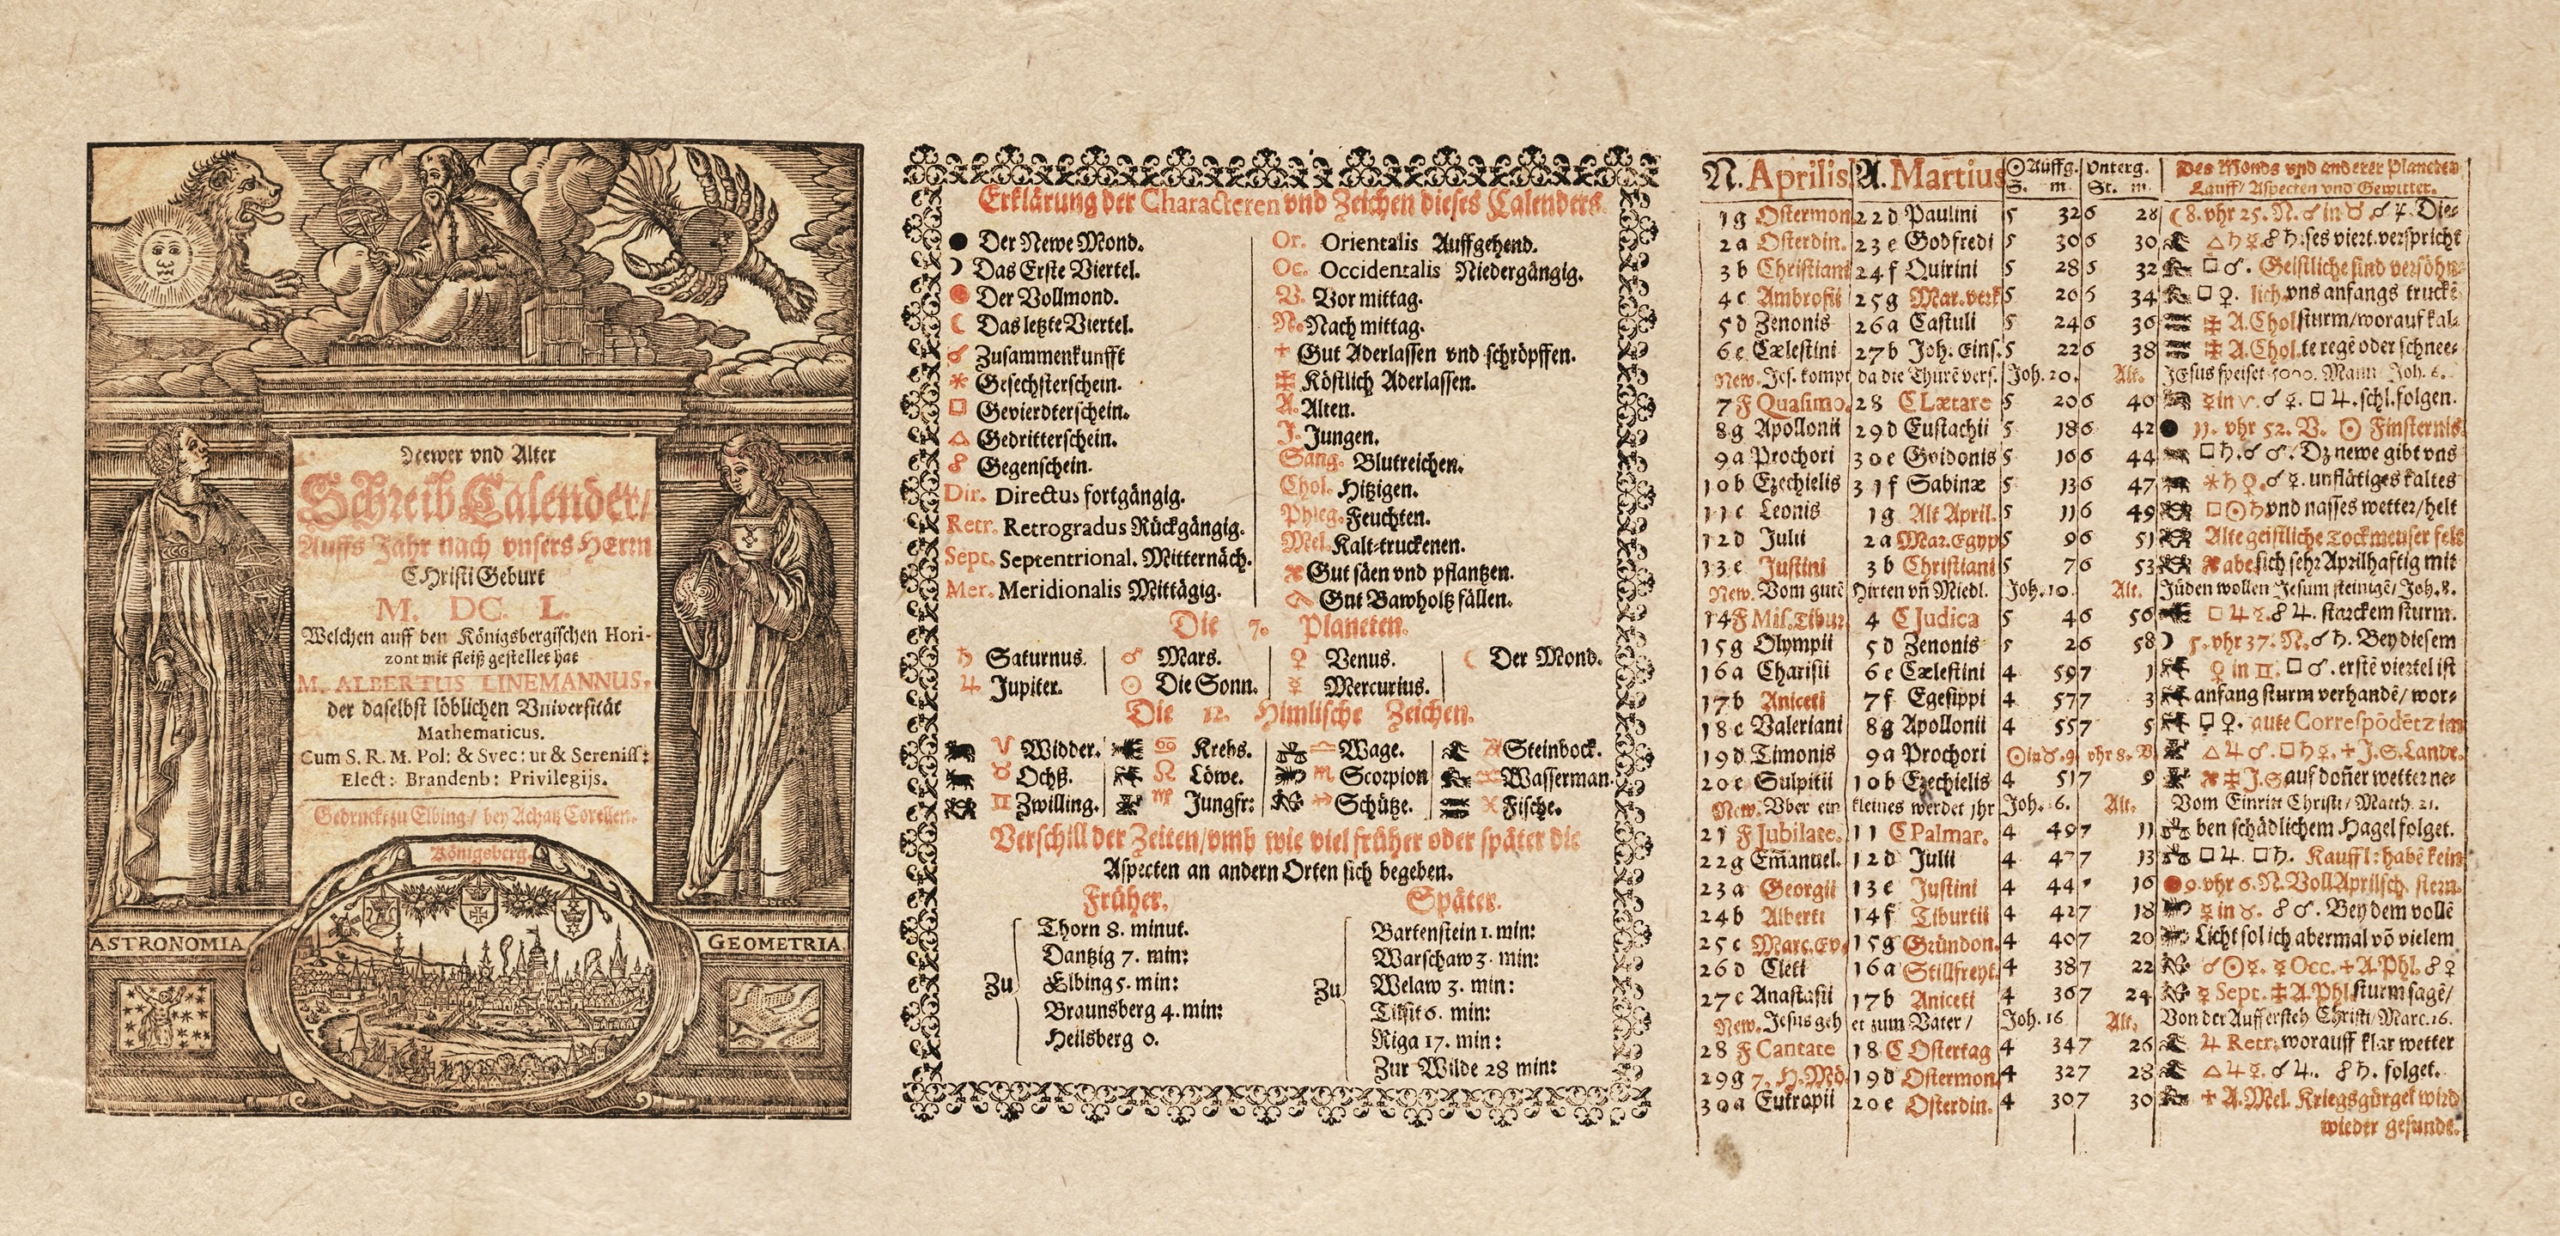 Na zdj. jeden z najstarszych kalendarzy w zbiorach Biblioteki Elbląskiej.